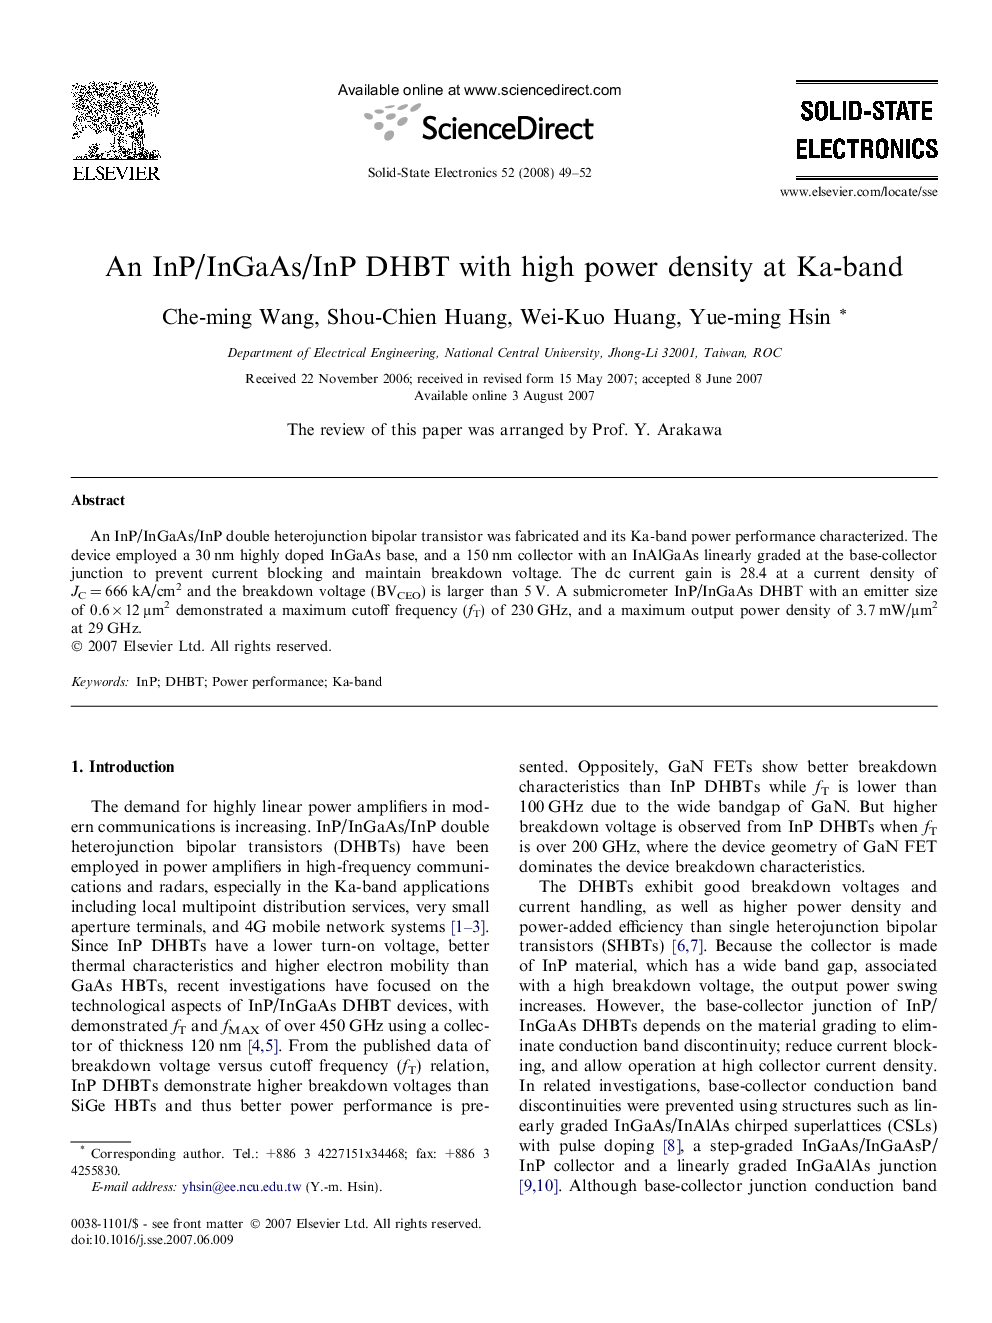 An InP/InGaAs/InP DHBT with high power density at Ka-band